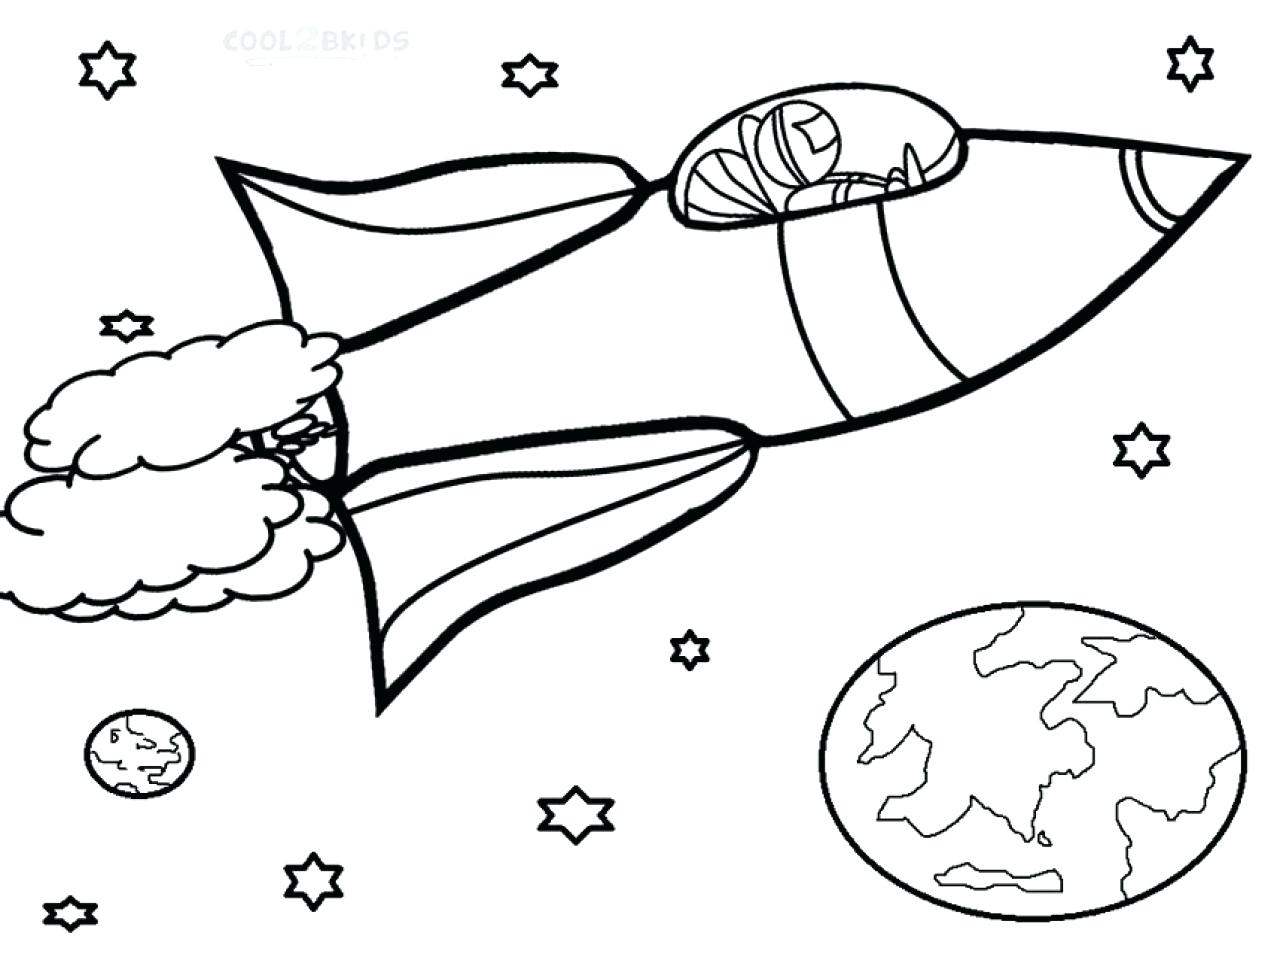 Детские раскраски ко дню космонавтики. Космос раскраска для детей. Ракета раскраска. Раскраска Космо для детей. Космические раскраски для детей.